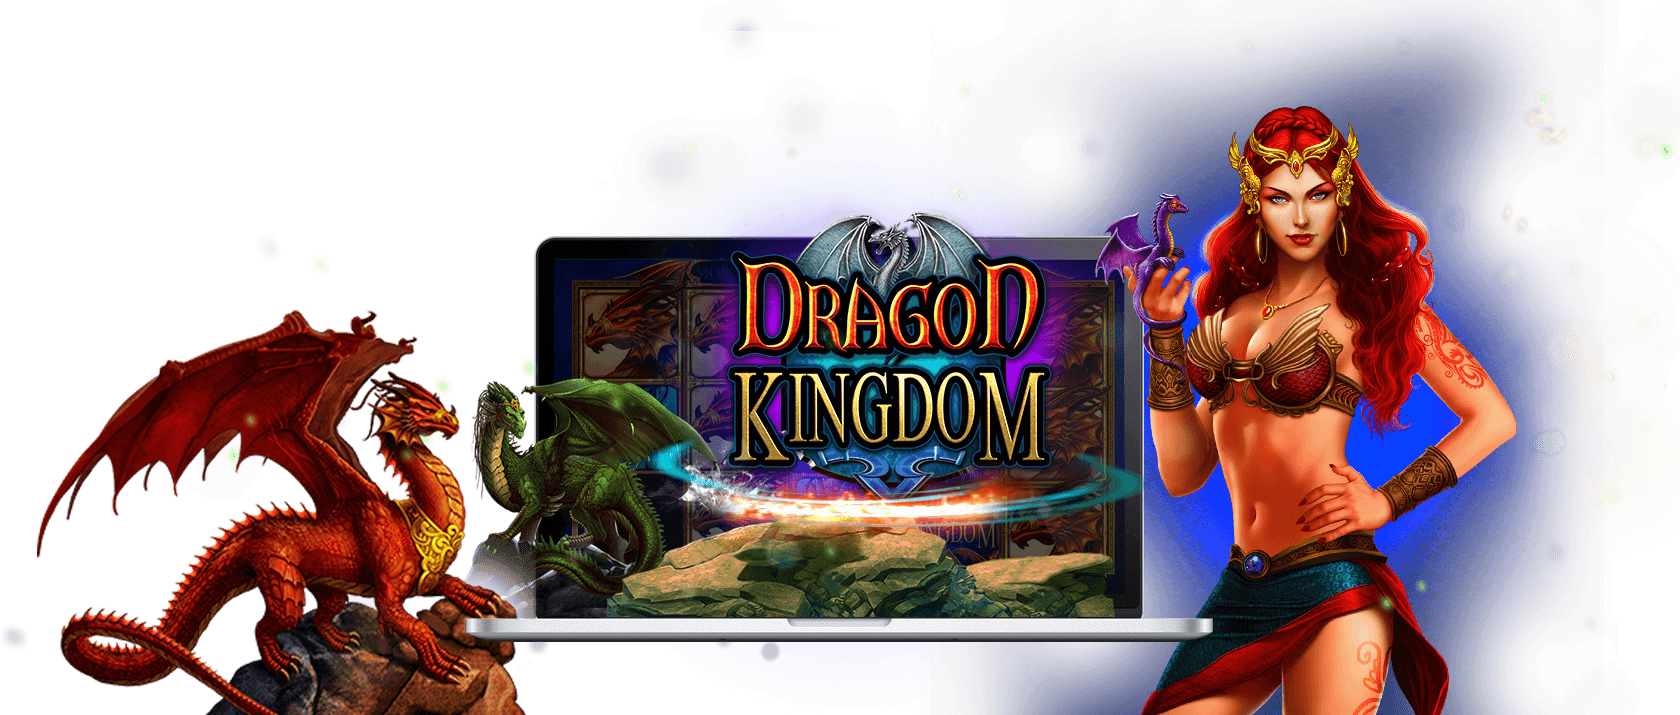 dragon kingdom slots game logo